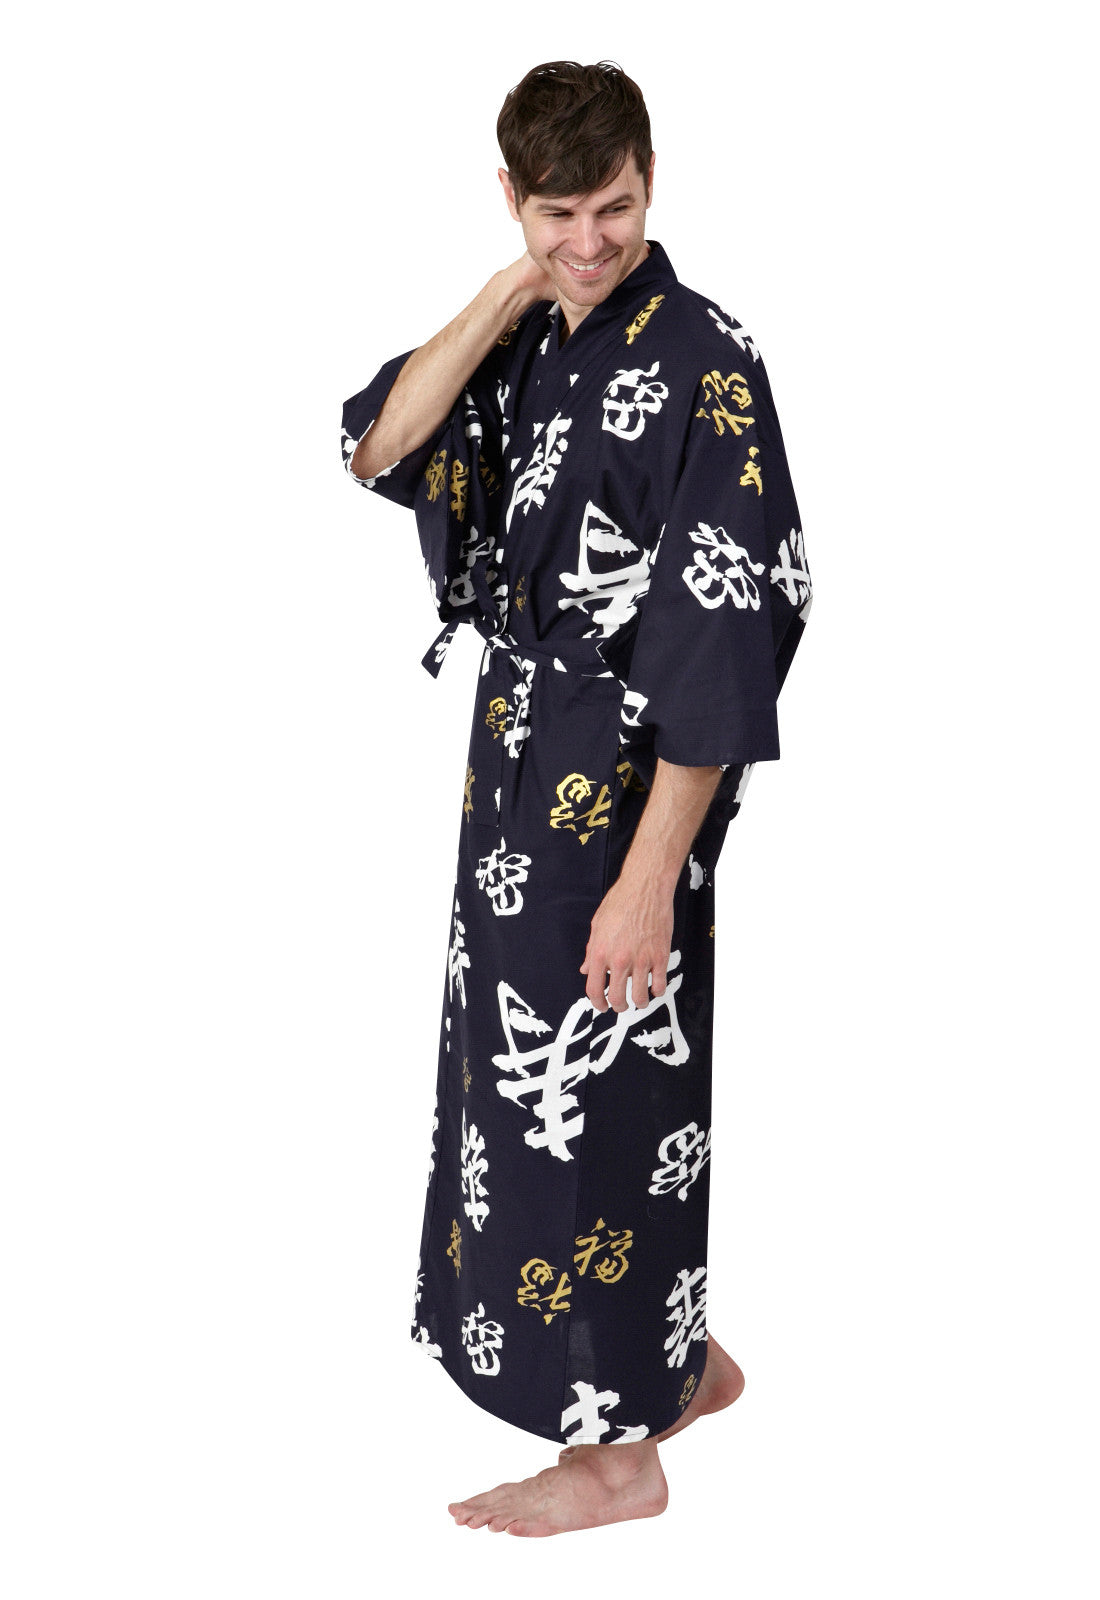 Kimono for men Formal Wear stage performance film cosplay Traditional  Japanese Kimono Men Japanese Style Bathrobe Yukata